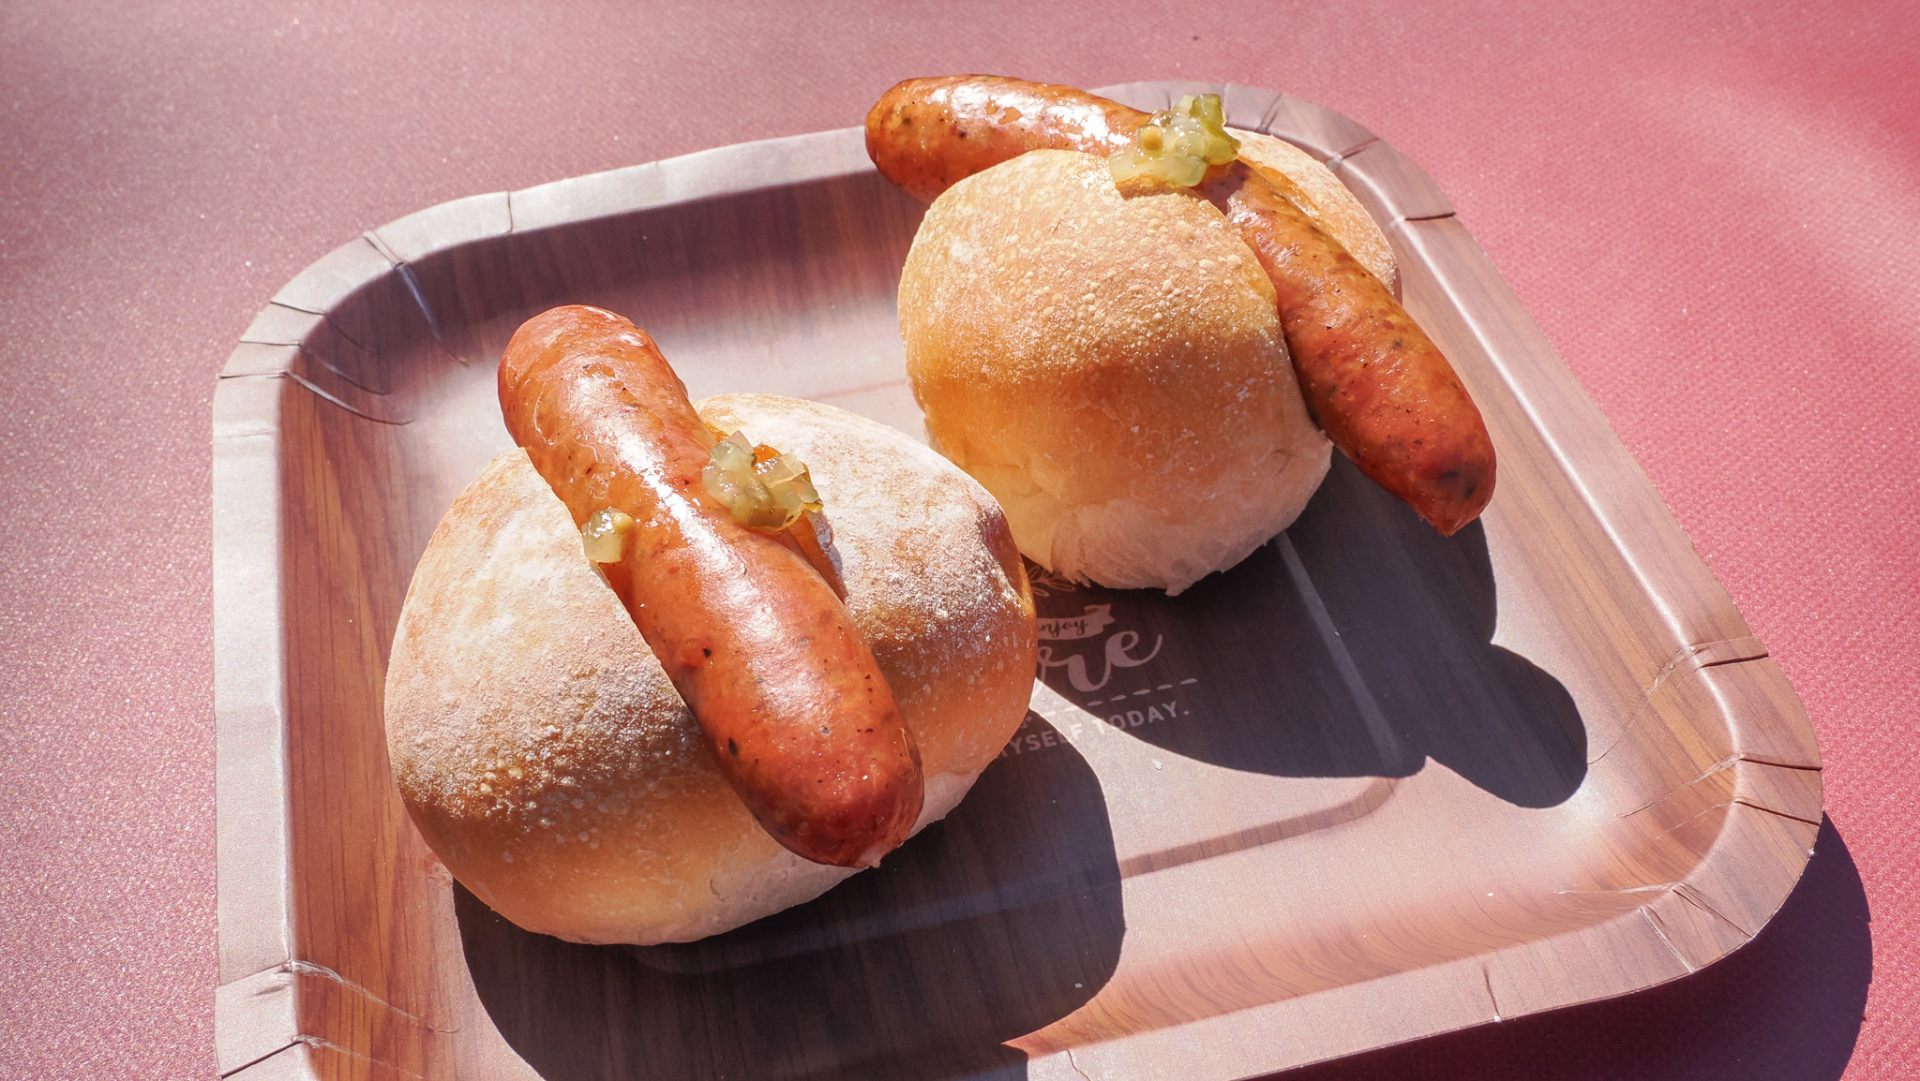 「エーデルワイスファーム」の"手作りソーセージミニドッグW"（1,000円）/Handmade sausages and bread of "EDELWEISS FARM" at Odorikoen 11-chome site